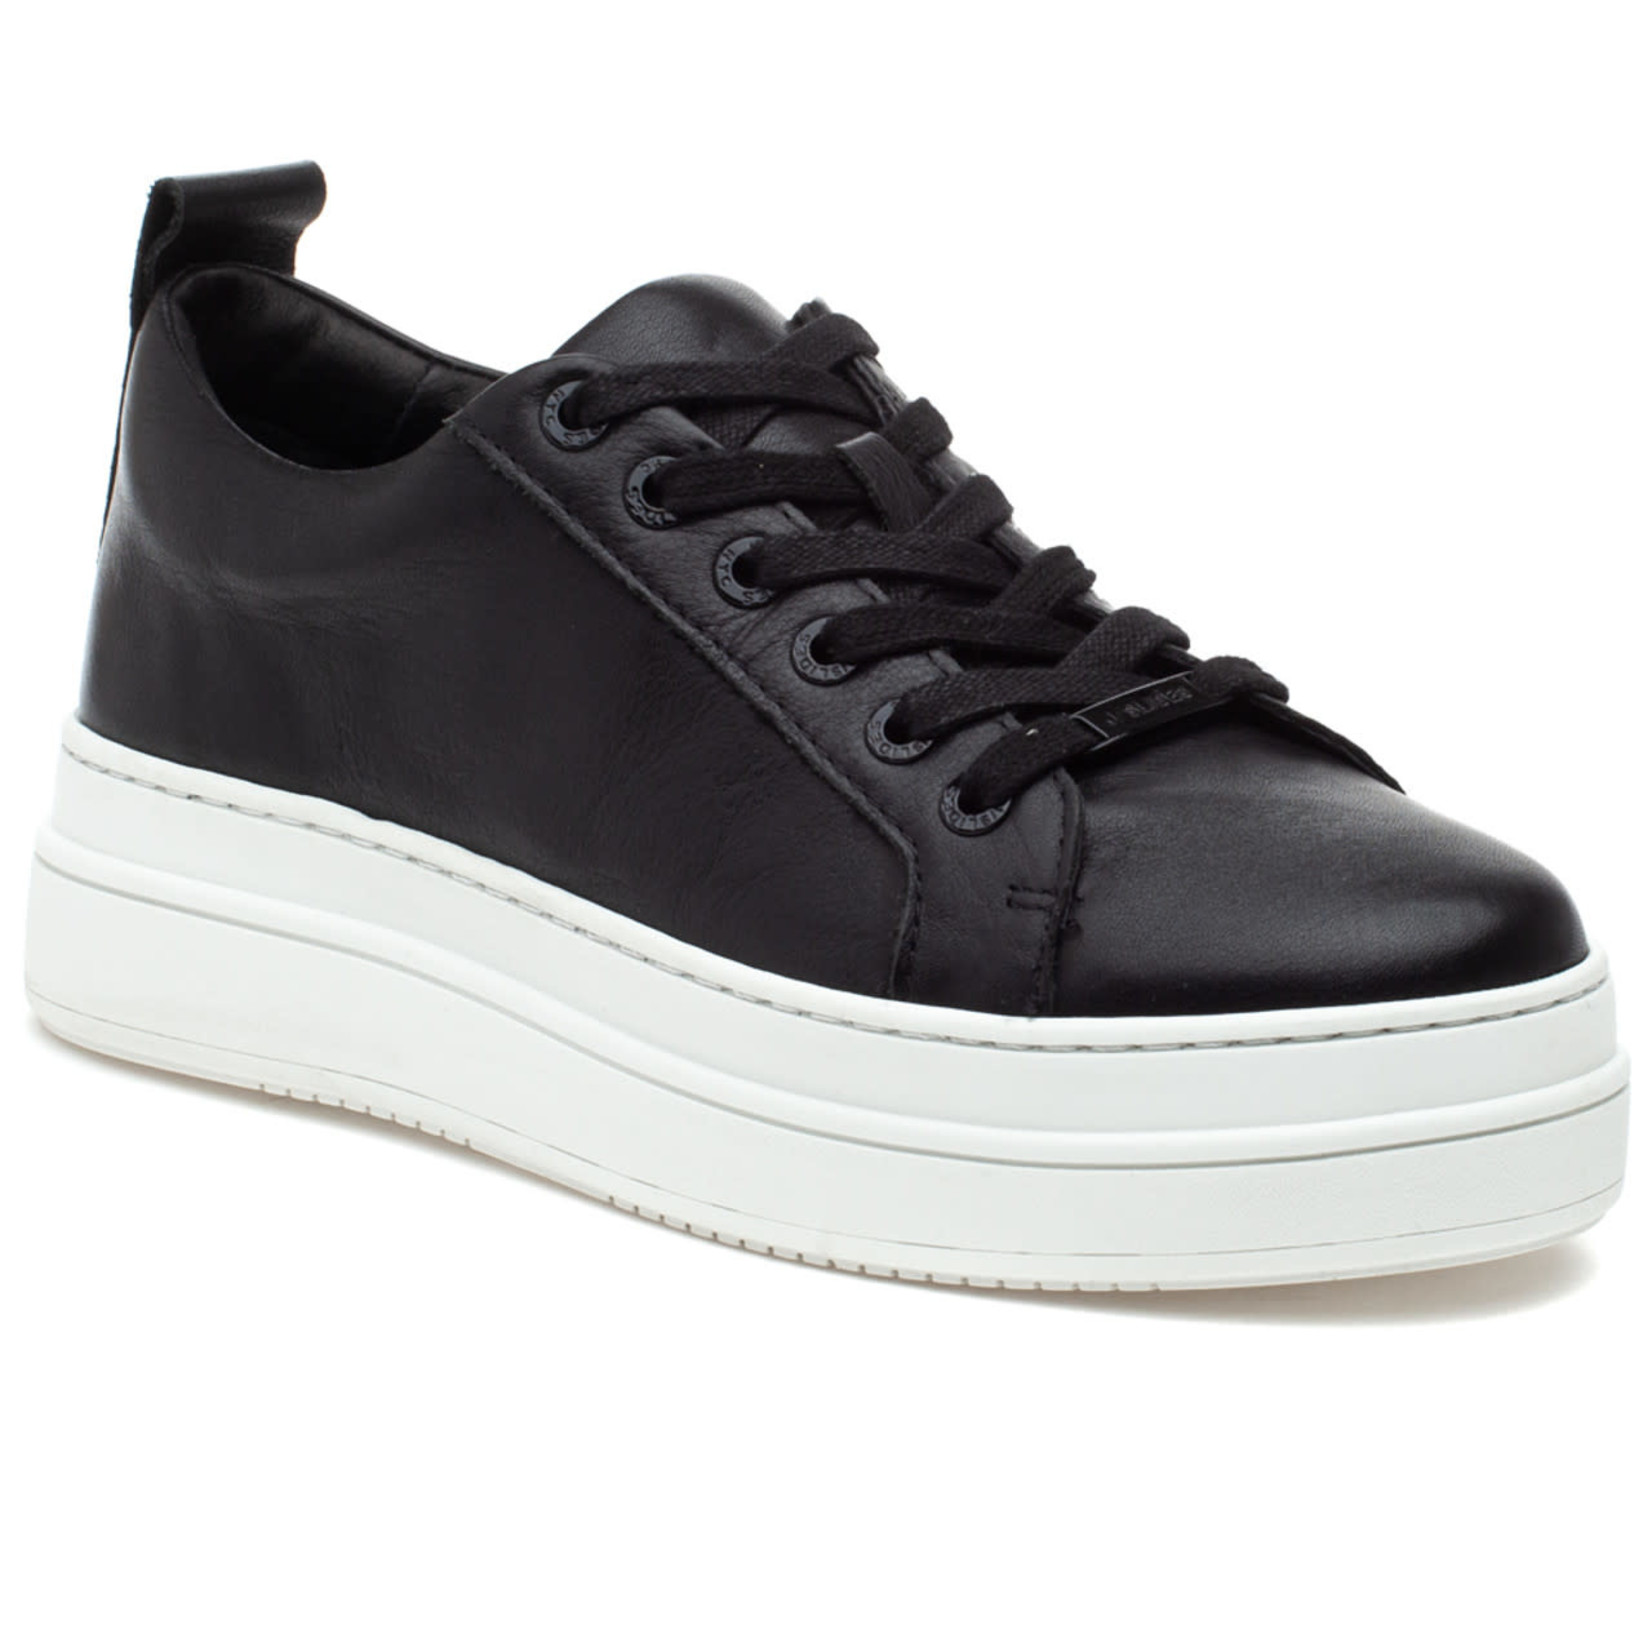 J/Slides - Noca Platform Sneaker - Black Leather 8